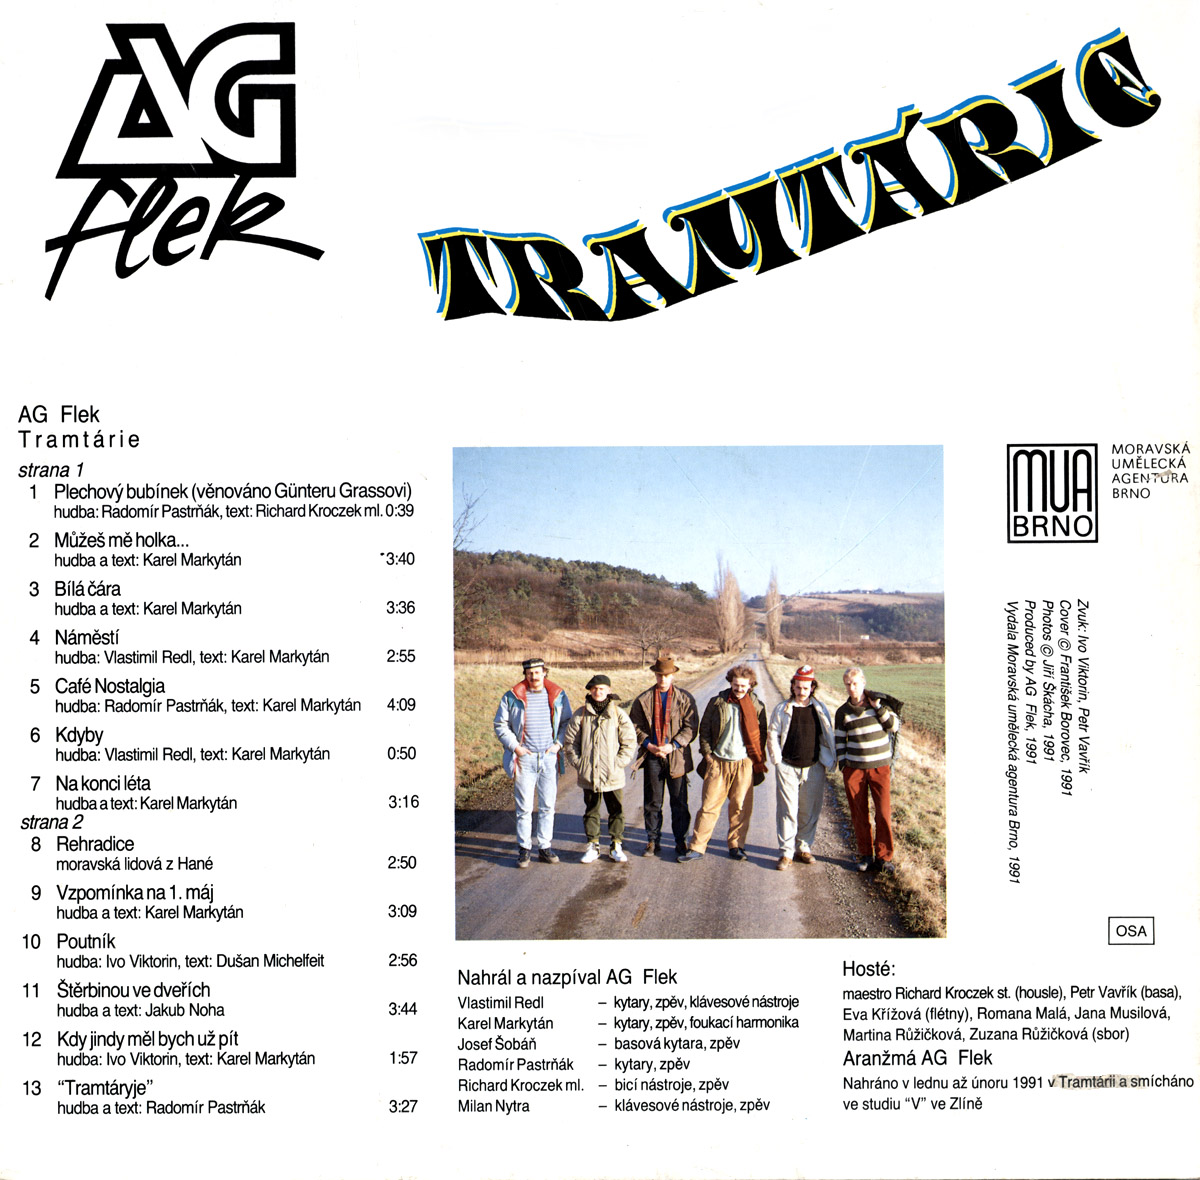 AG FLEK - TRAMTRIE